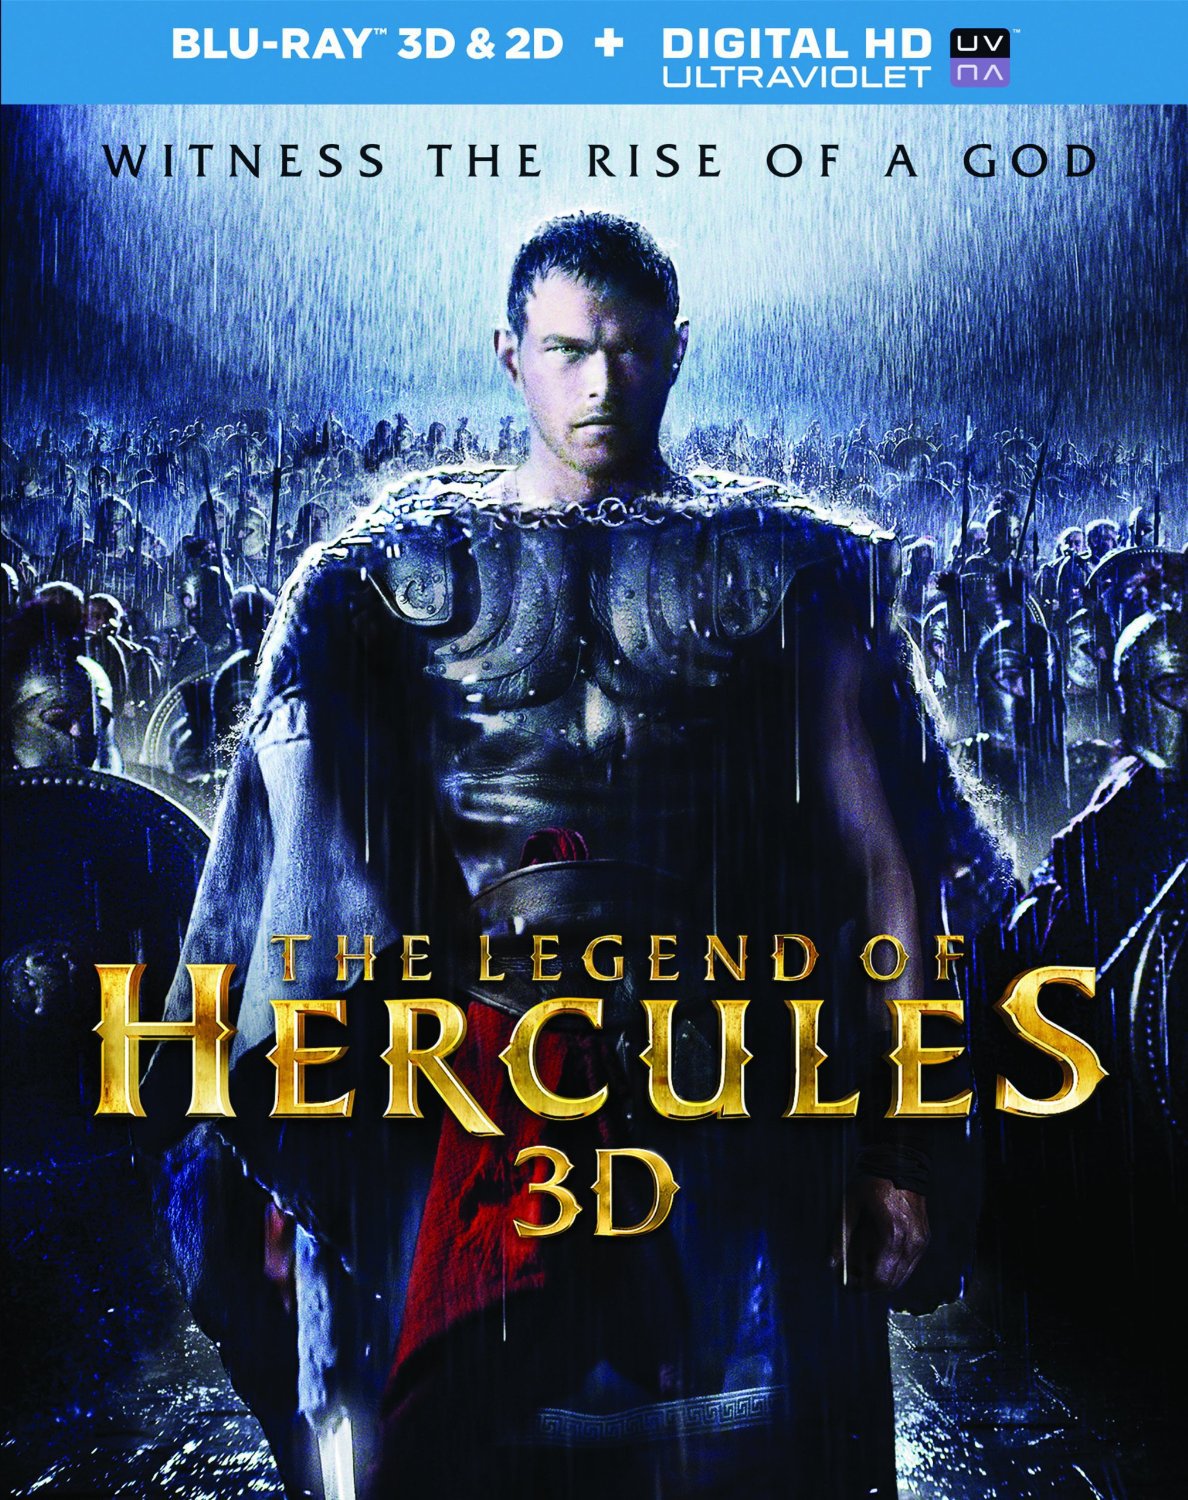 Legend of Hercules 3D, The